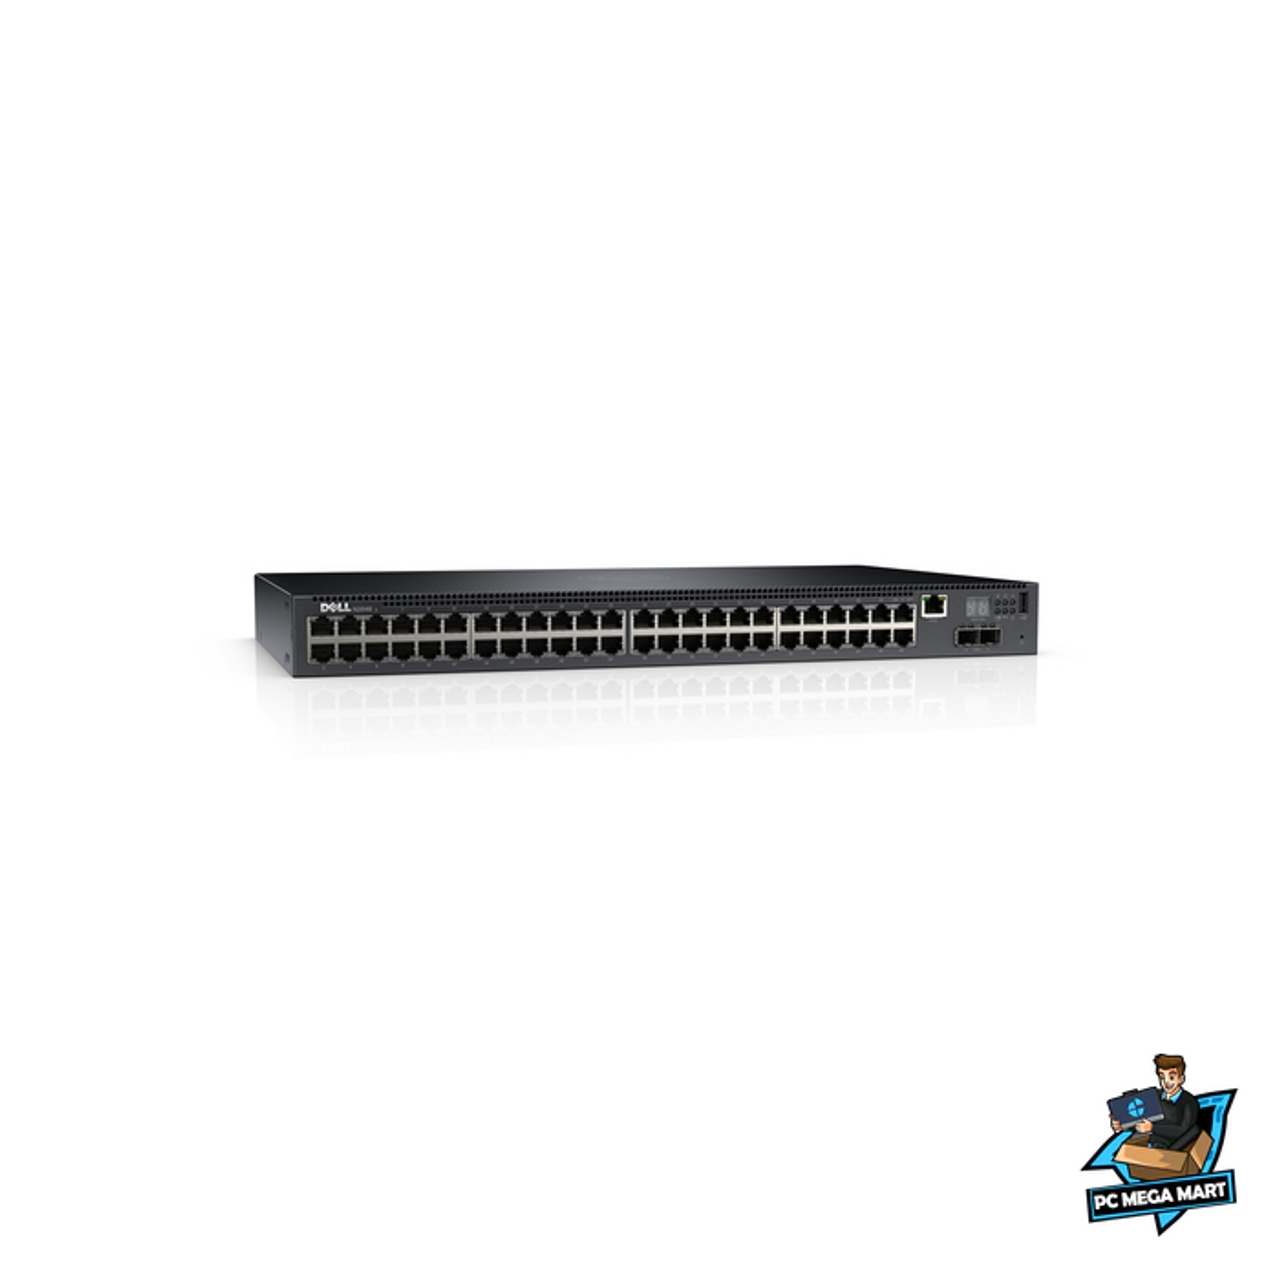 DELL PowerConnect N2048 Managed L3 Gigabit Ethernet (10 100 1000) Black 1U 4